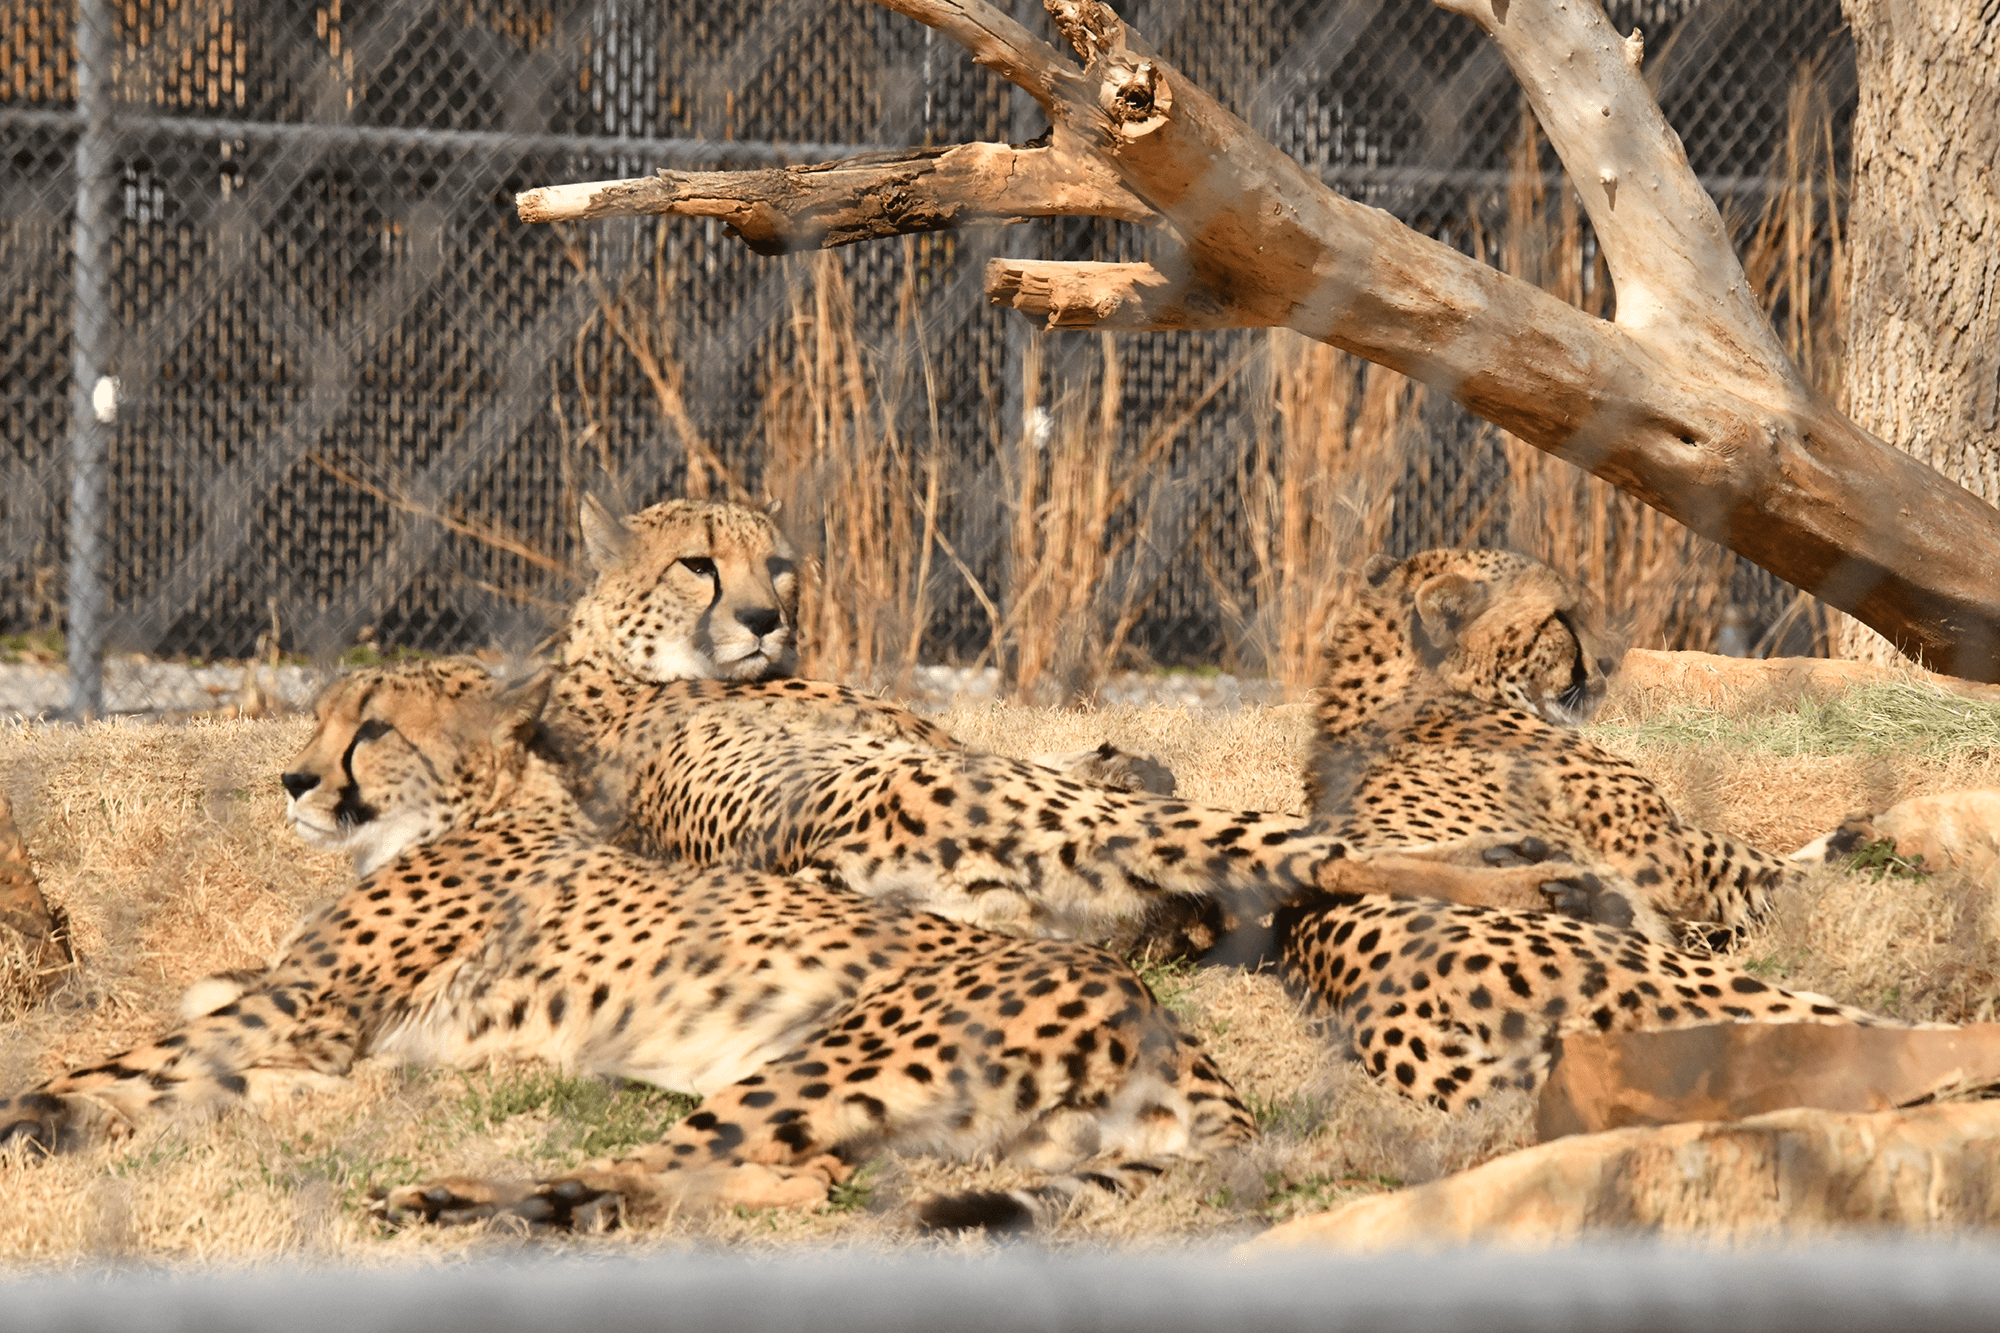 Oklahoma zoo three cheetah brothers to animal family 98 Rock